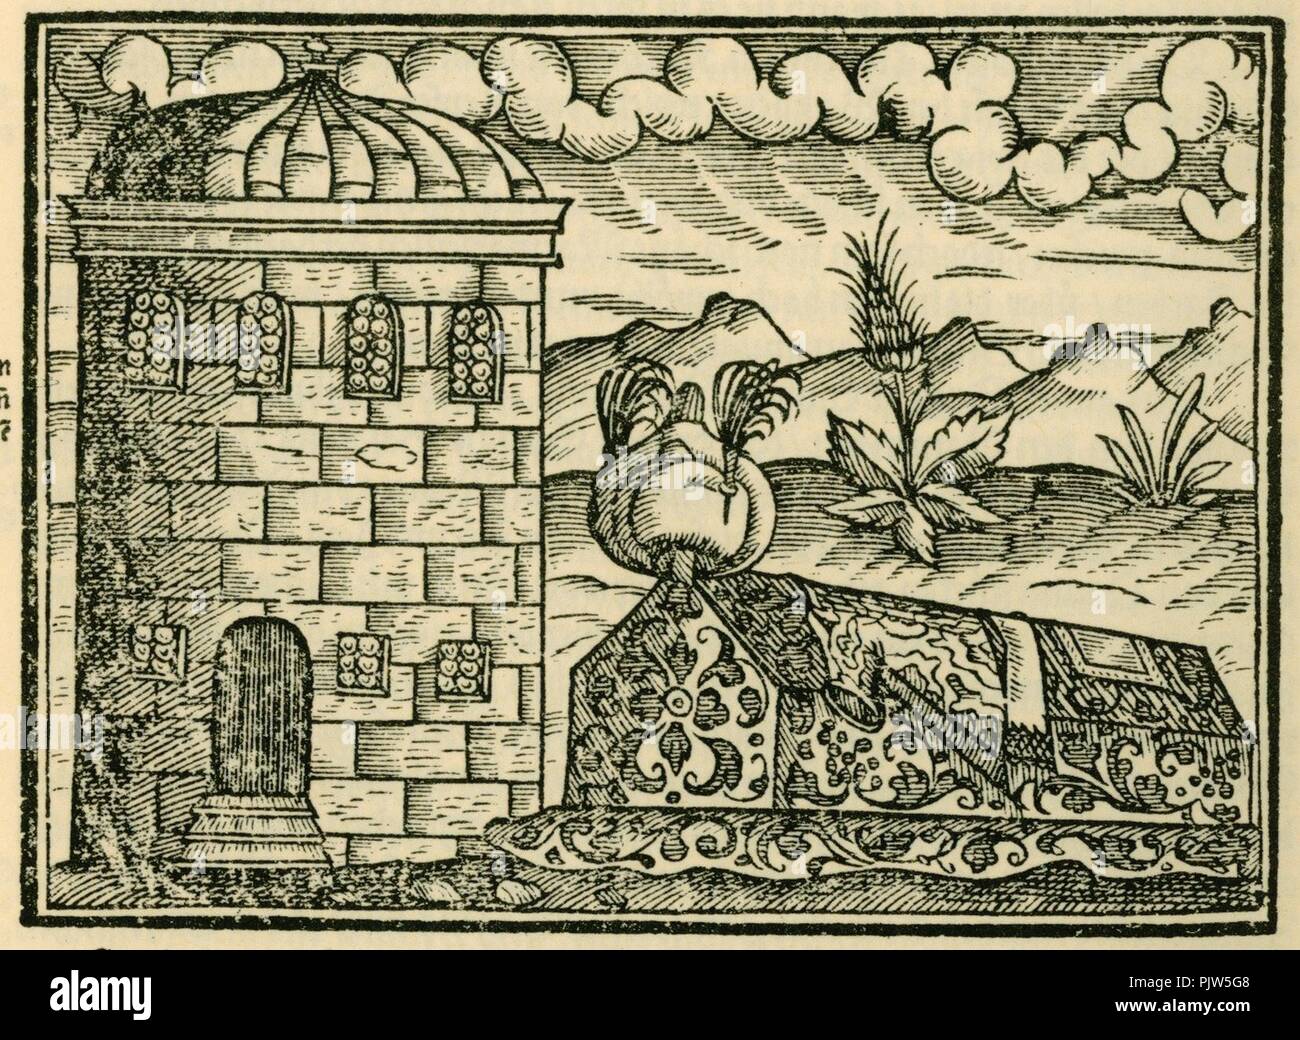 Begrebnissen der Keyser und grossen Herren - Schweigger Salomon - 1608. Stock Photo